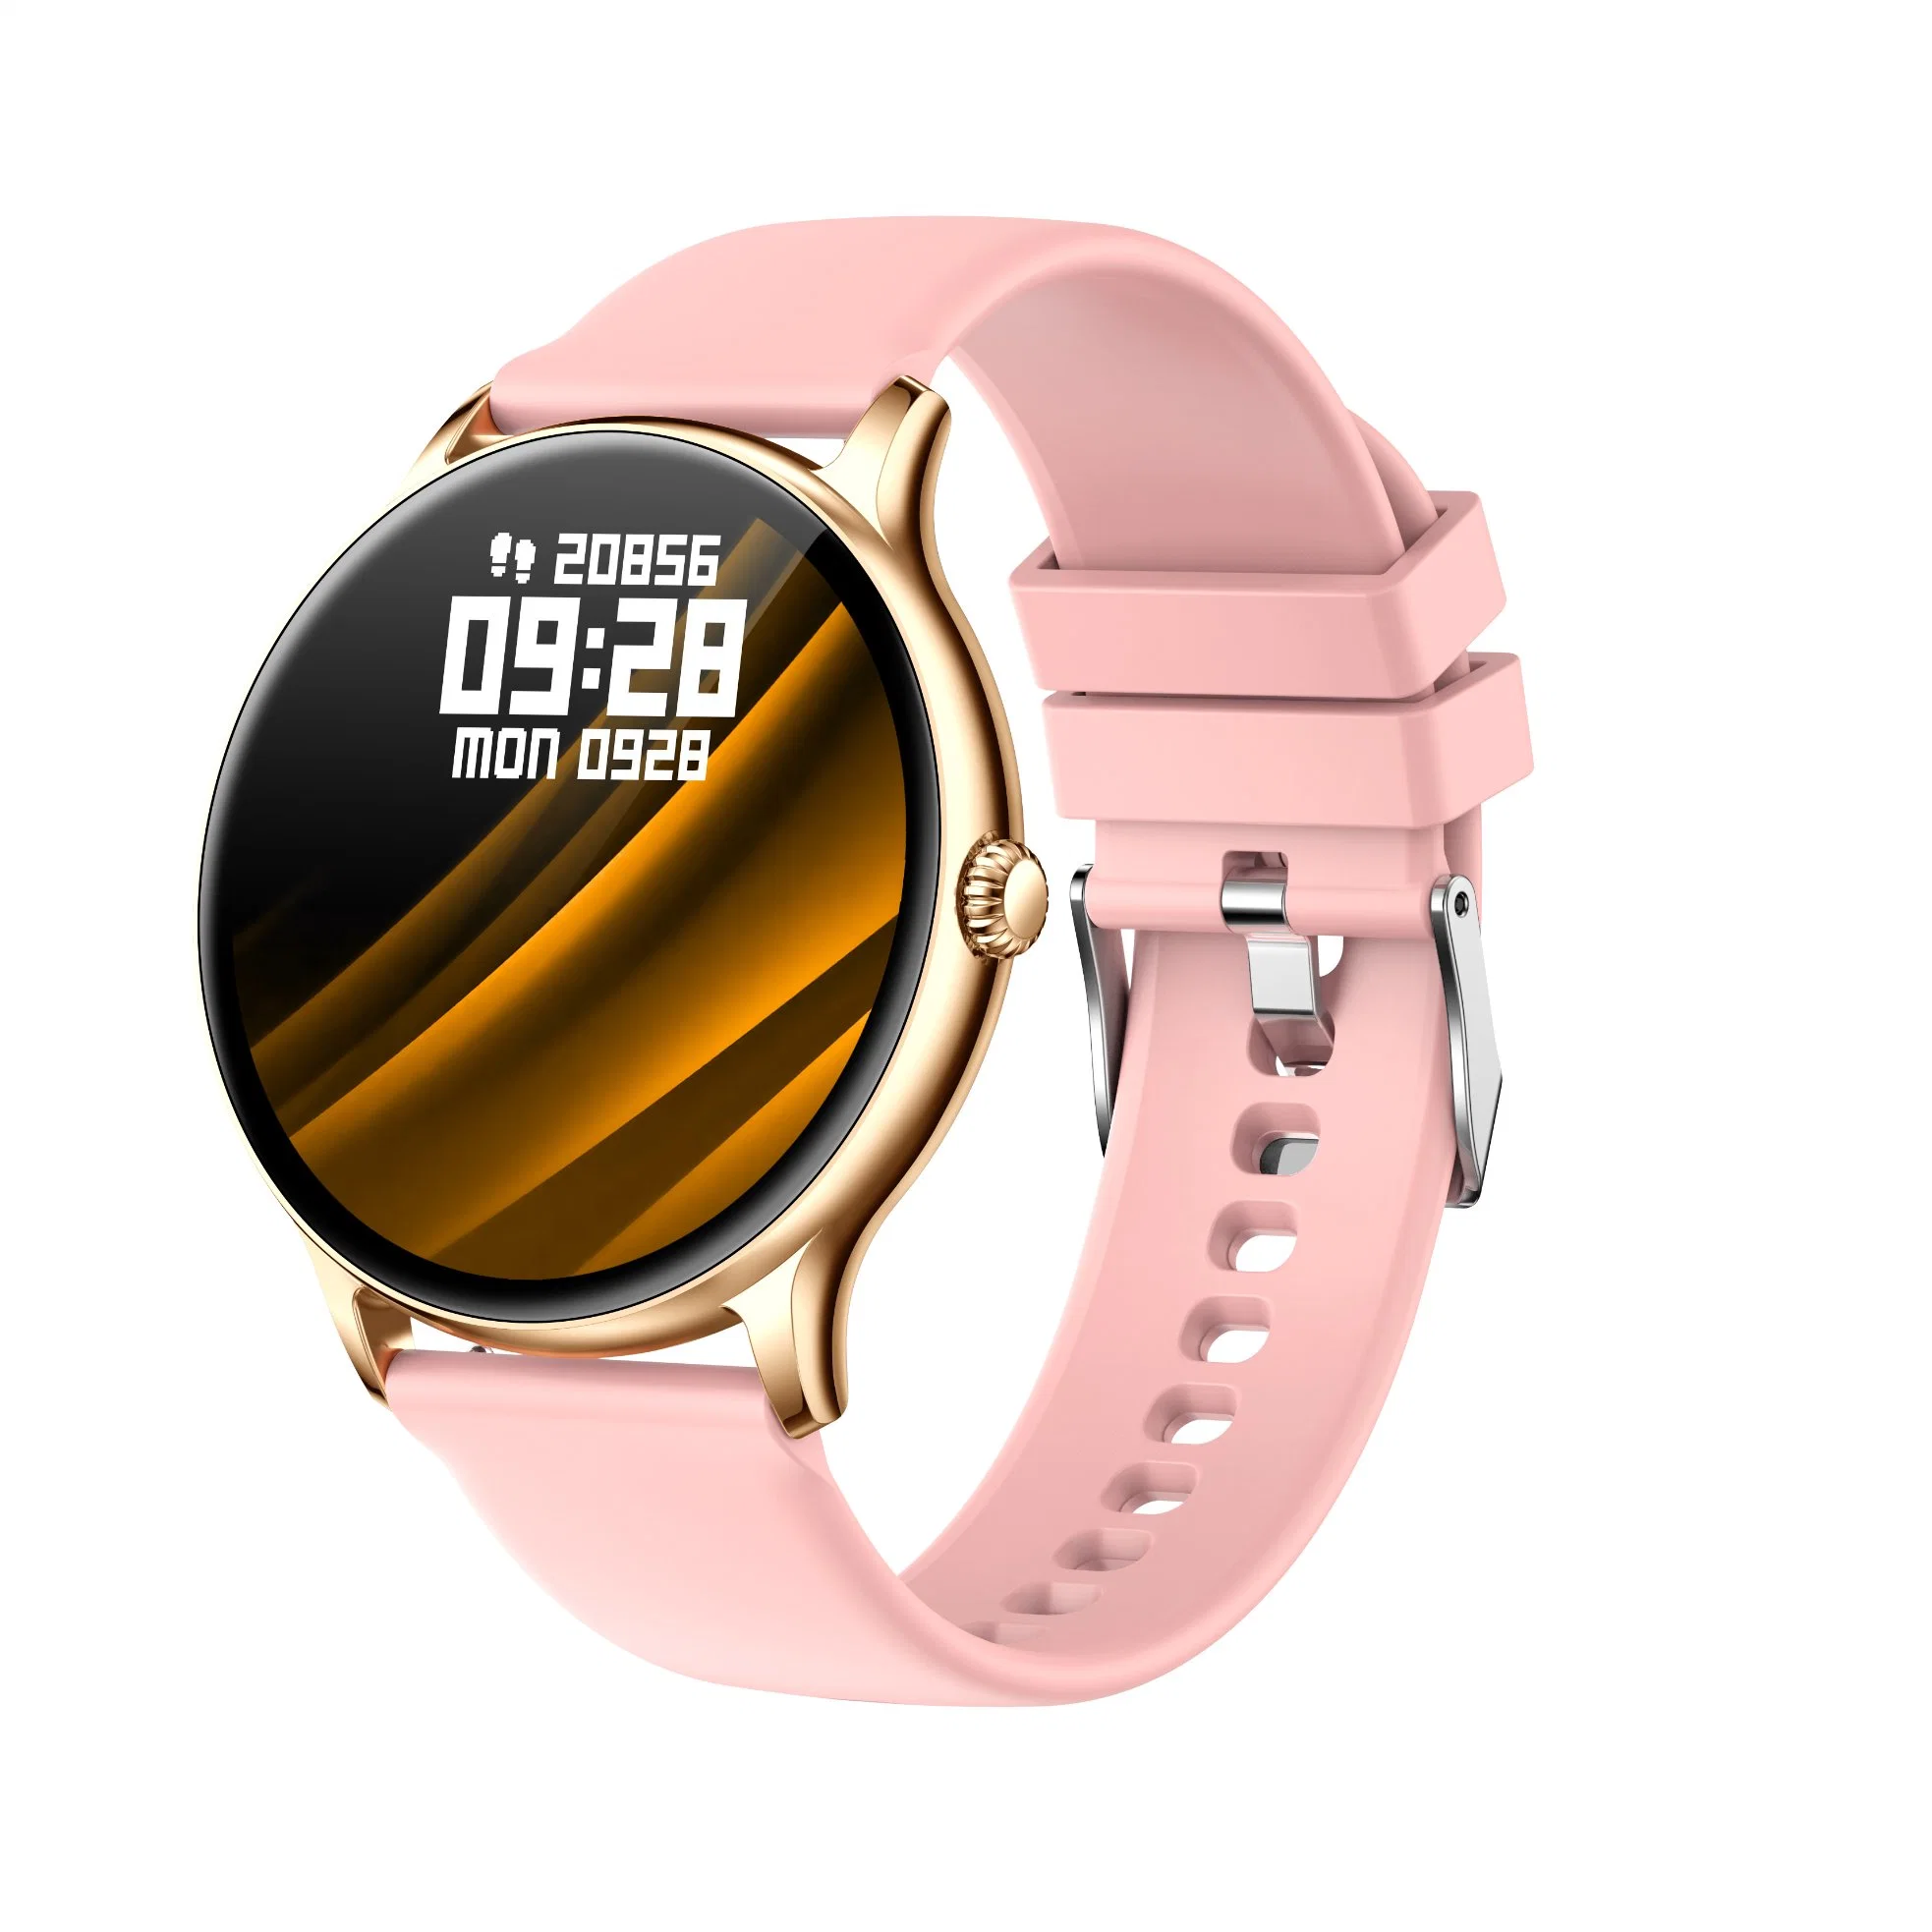 Nouveau Smart Watch hommes tactile plein écran Fitness Sport Watch étanches IP67 pour Android Ios Smartwatch Bluetooth